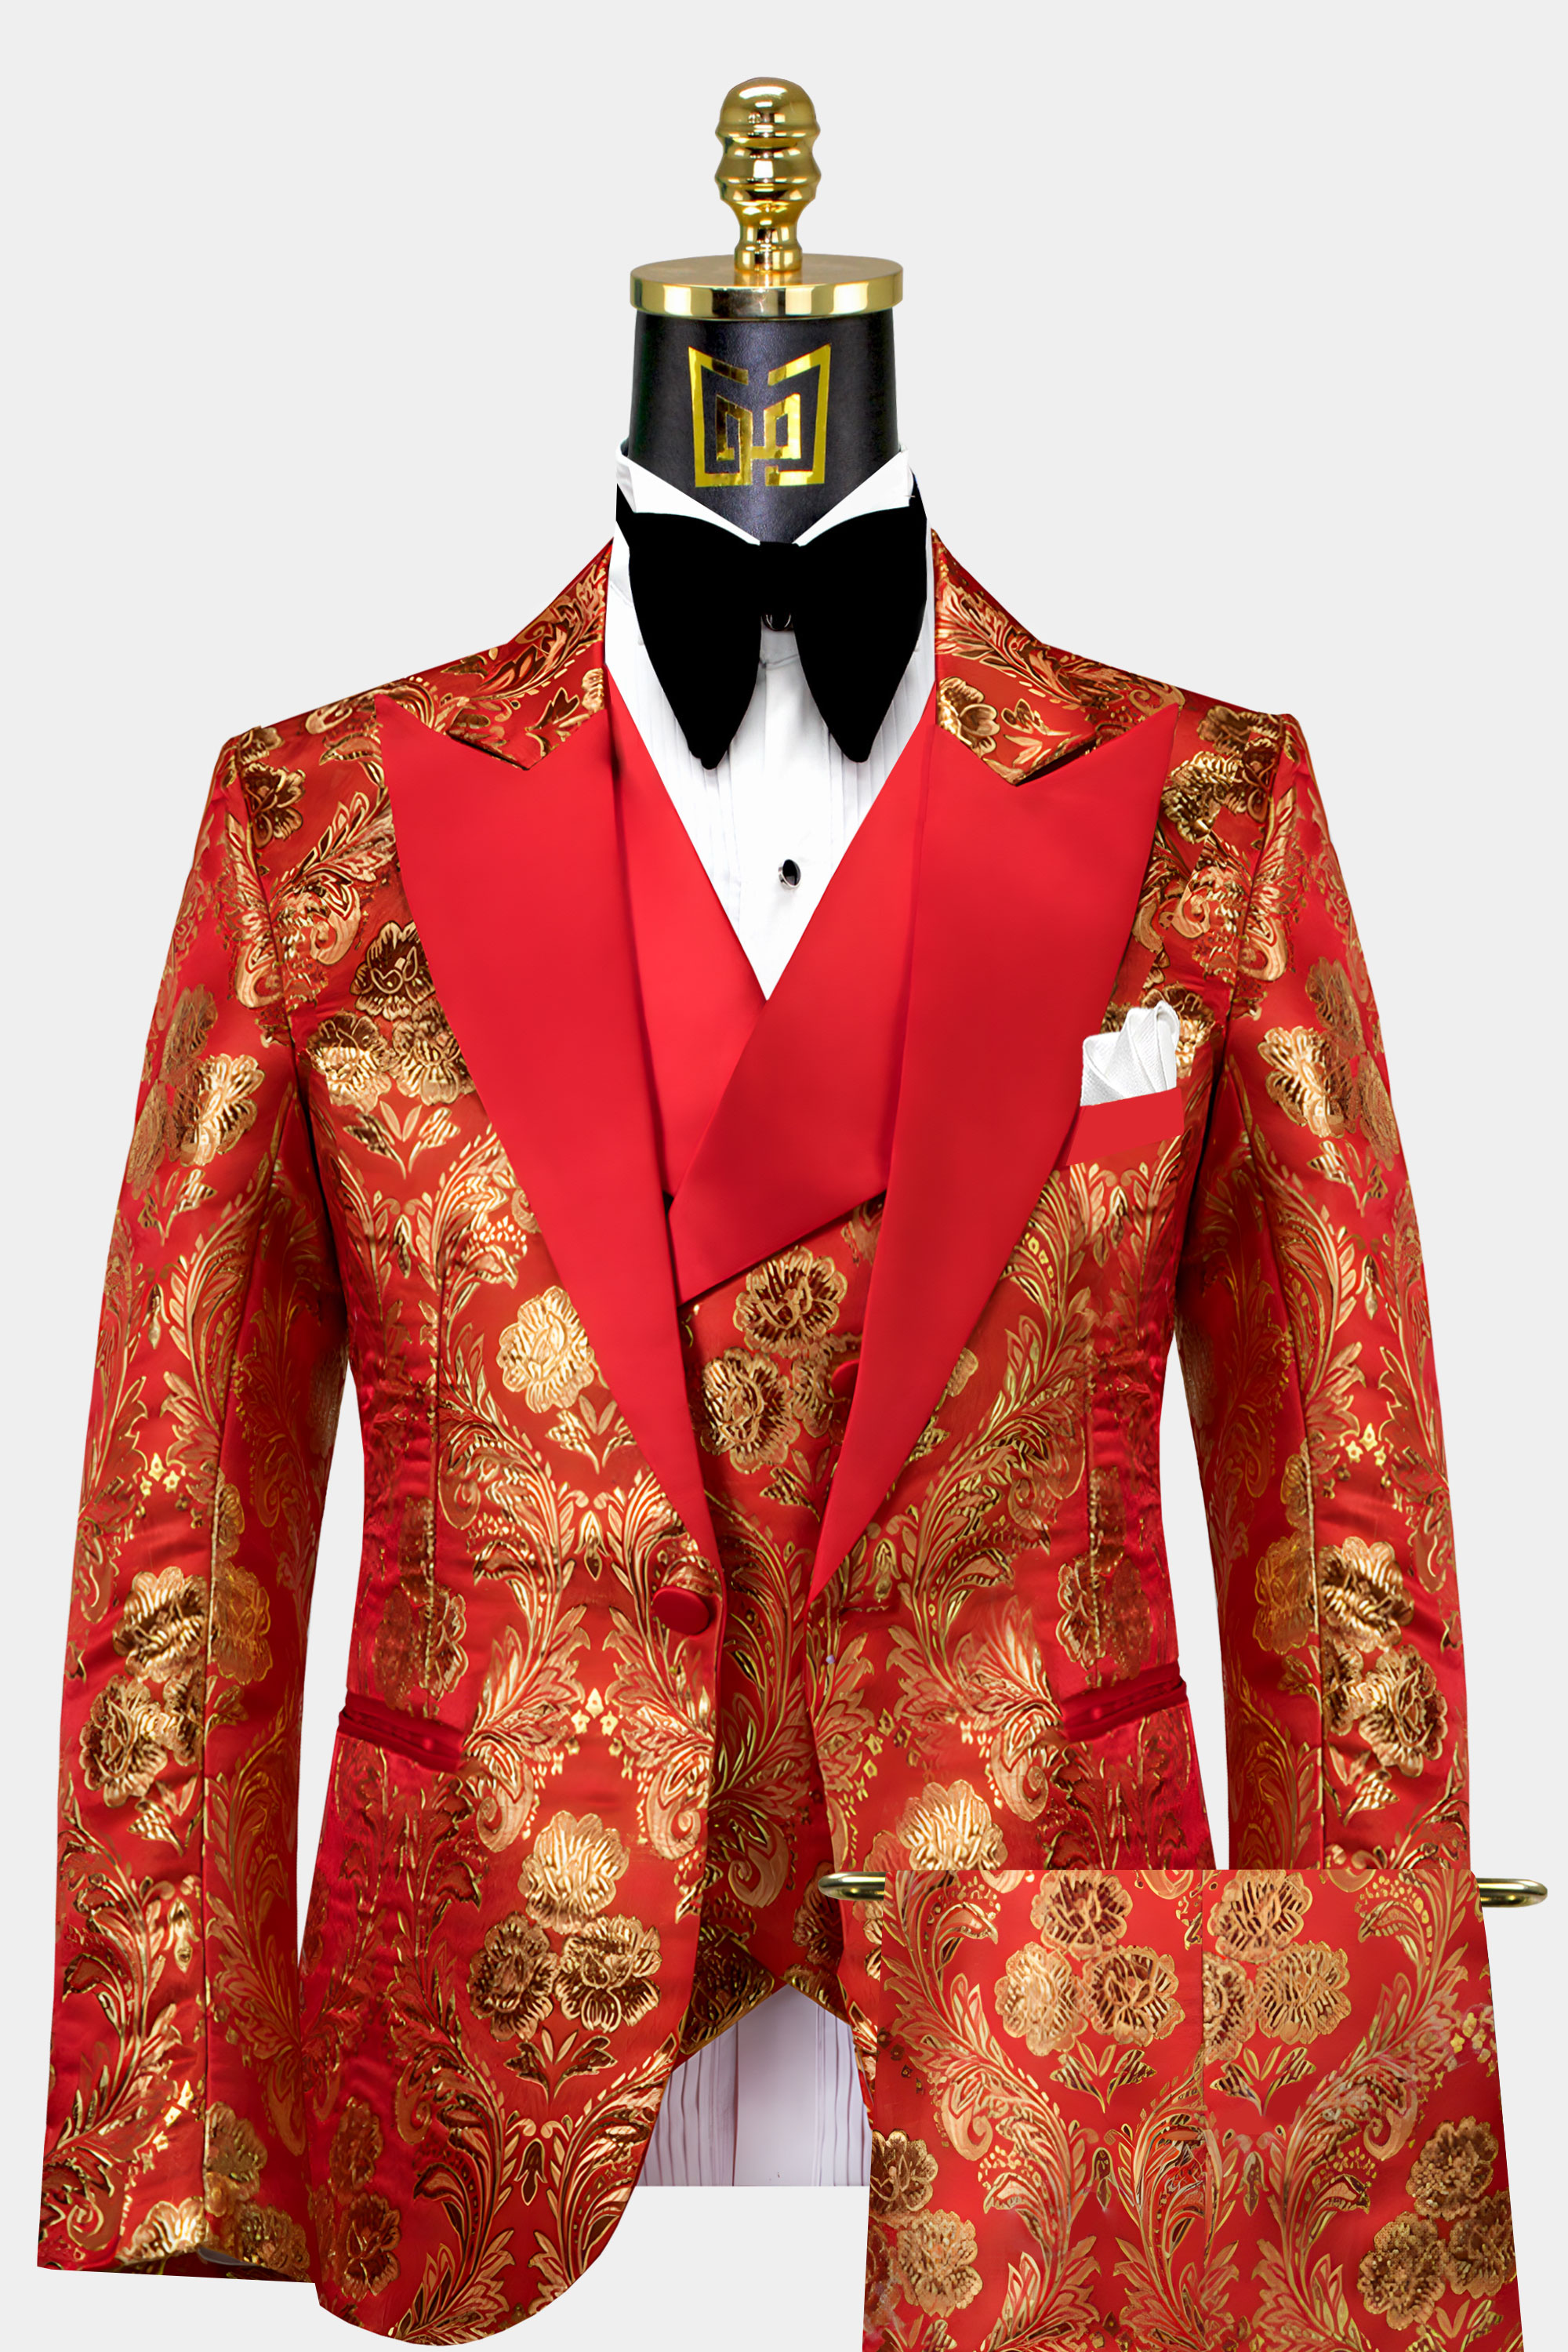 Mens-Red-and-Gold-Tuxedo-Groom-Wedding-Prom-Suit-from-Gentlemansguru.com